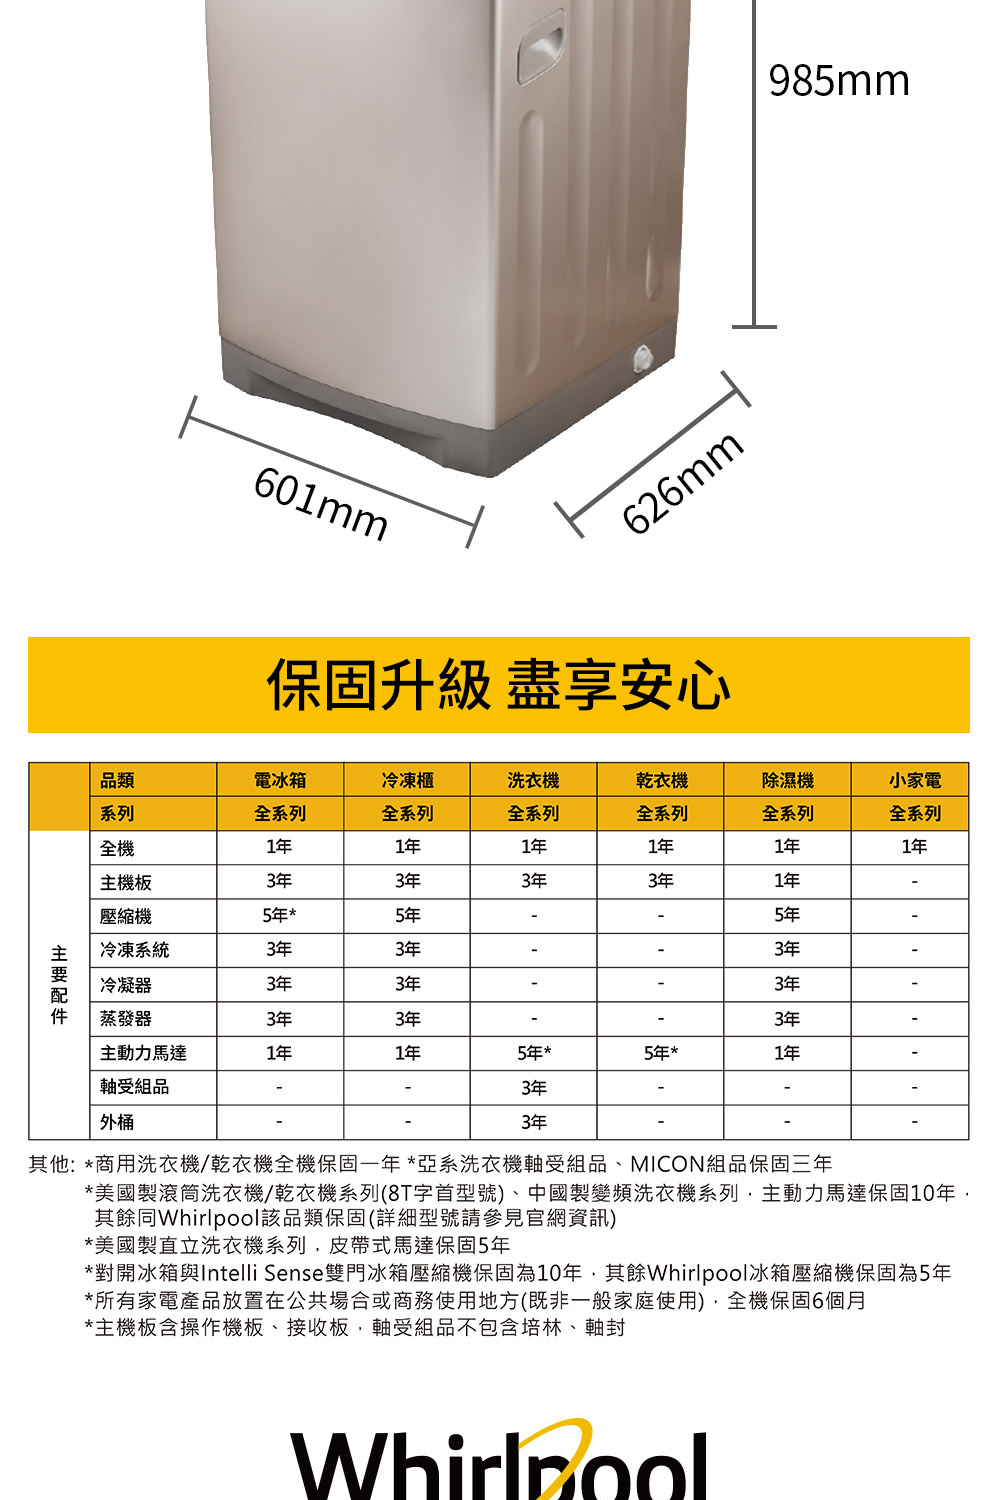 對開冰箱與Intelli Sense雙門冰箱壓縮機保固為10年,其餘Whirlpool冰箱壓縮機保固為5年